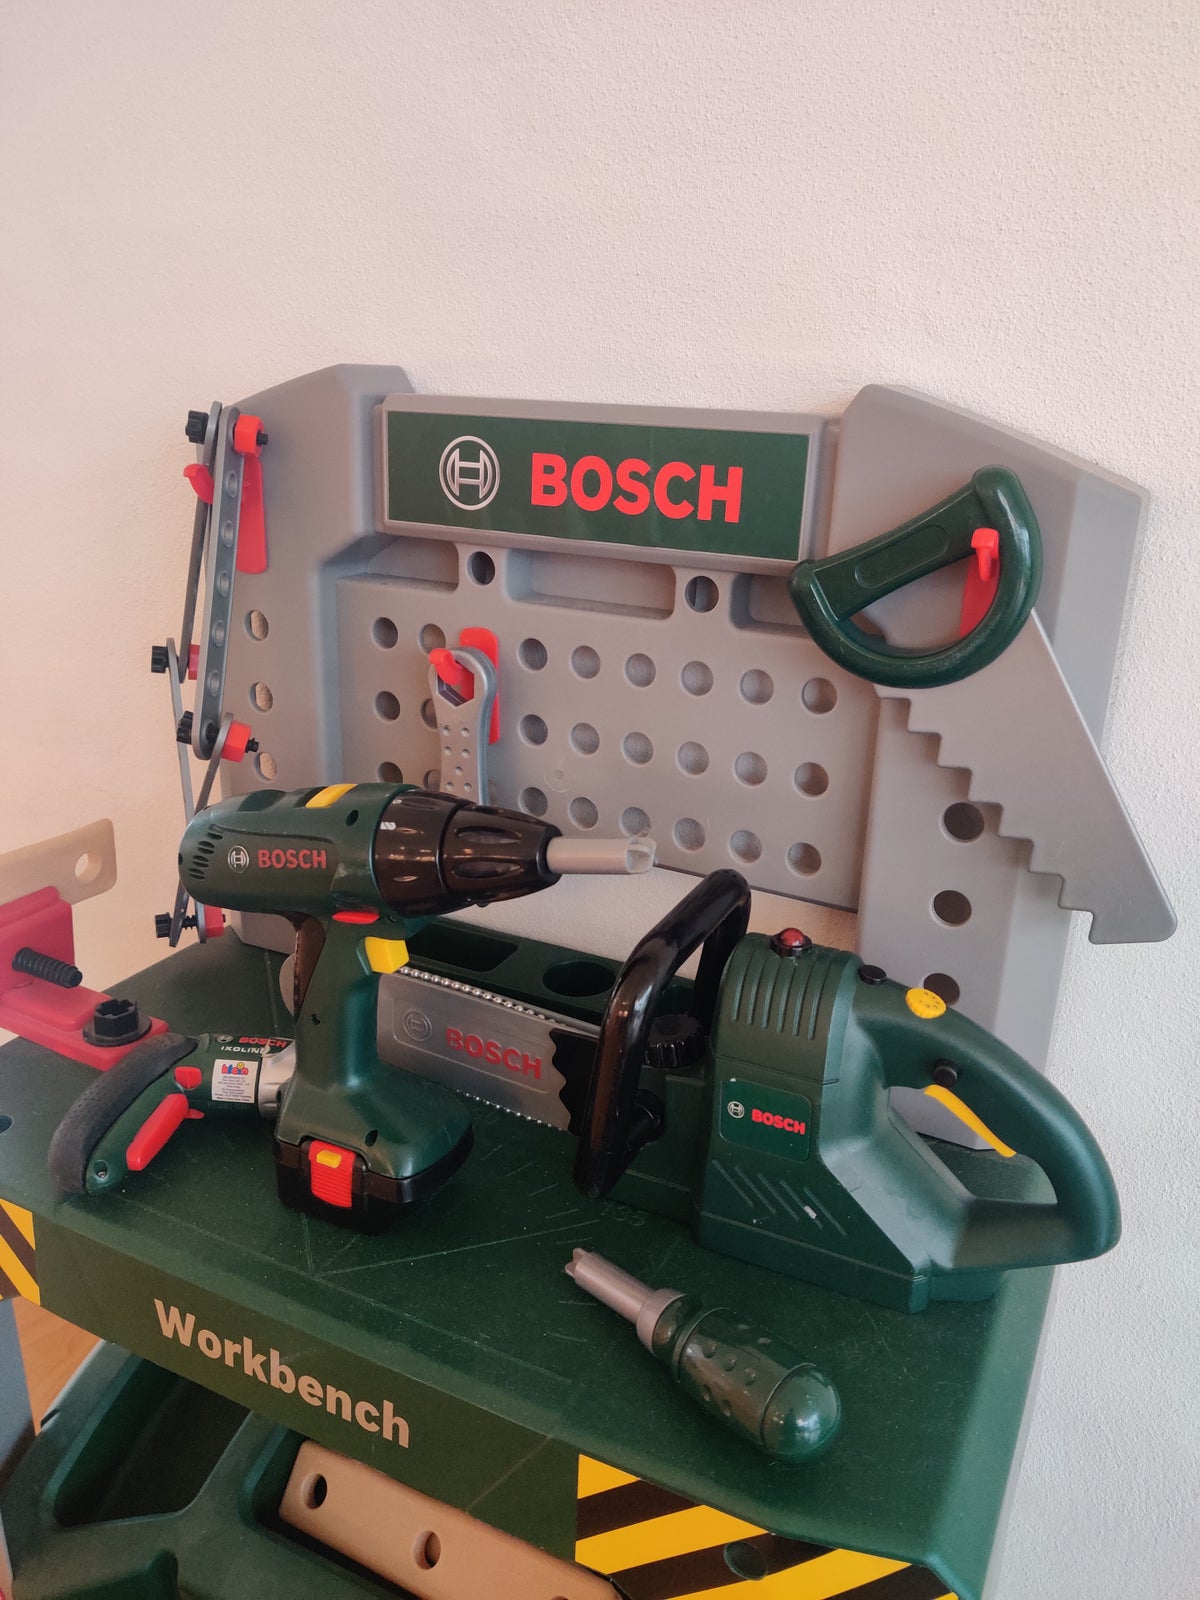 Værktøjsbænk, Værktøjsbord fra 'Bosch', Bosch